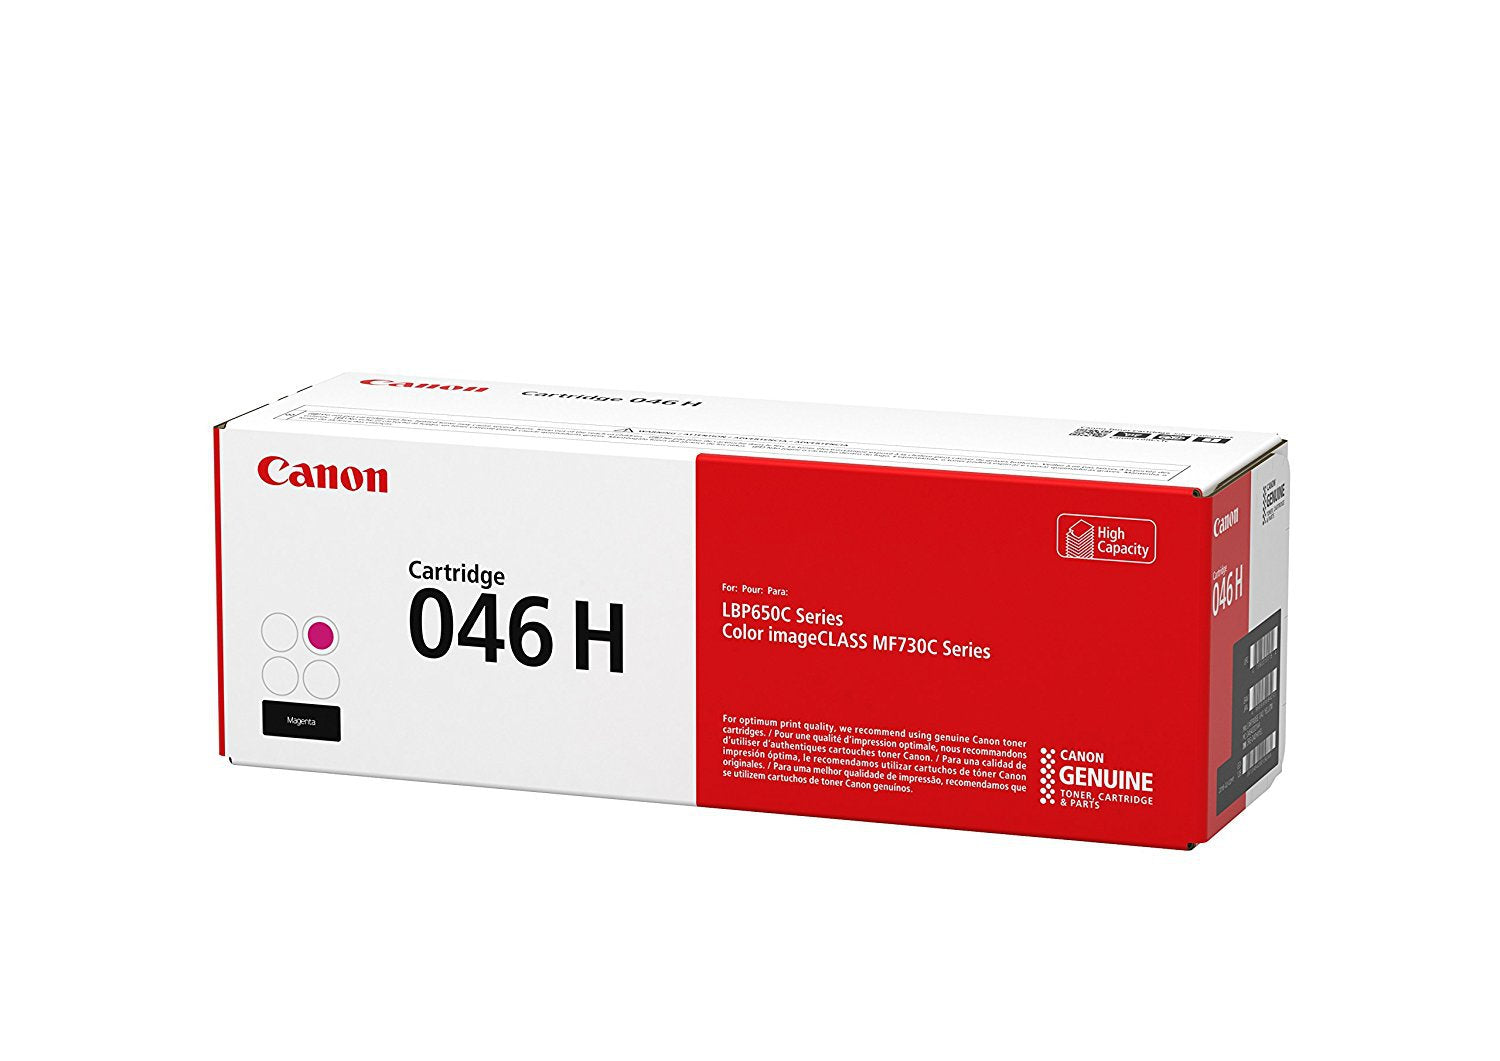 Canon Toner 046H Magenta, Alto Rendimiento, 63000 pags, 1252C005AA, Compatible LBP650C